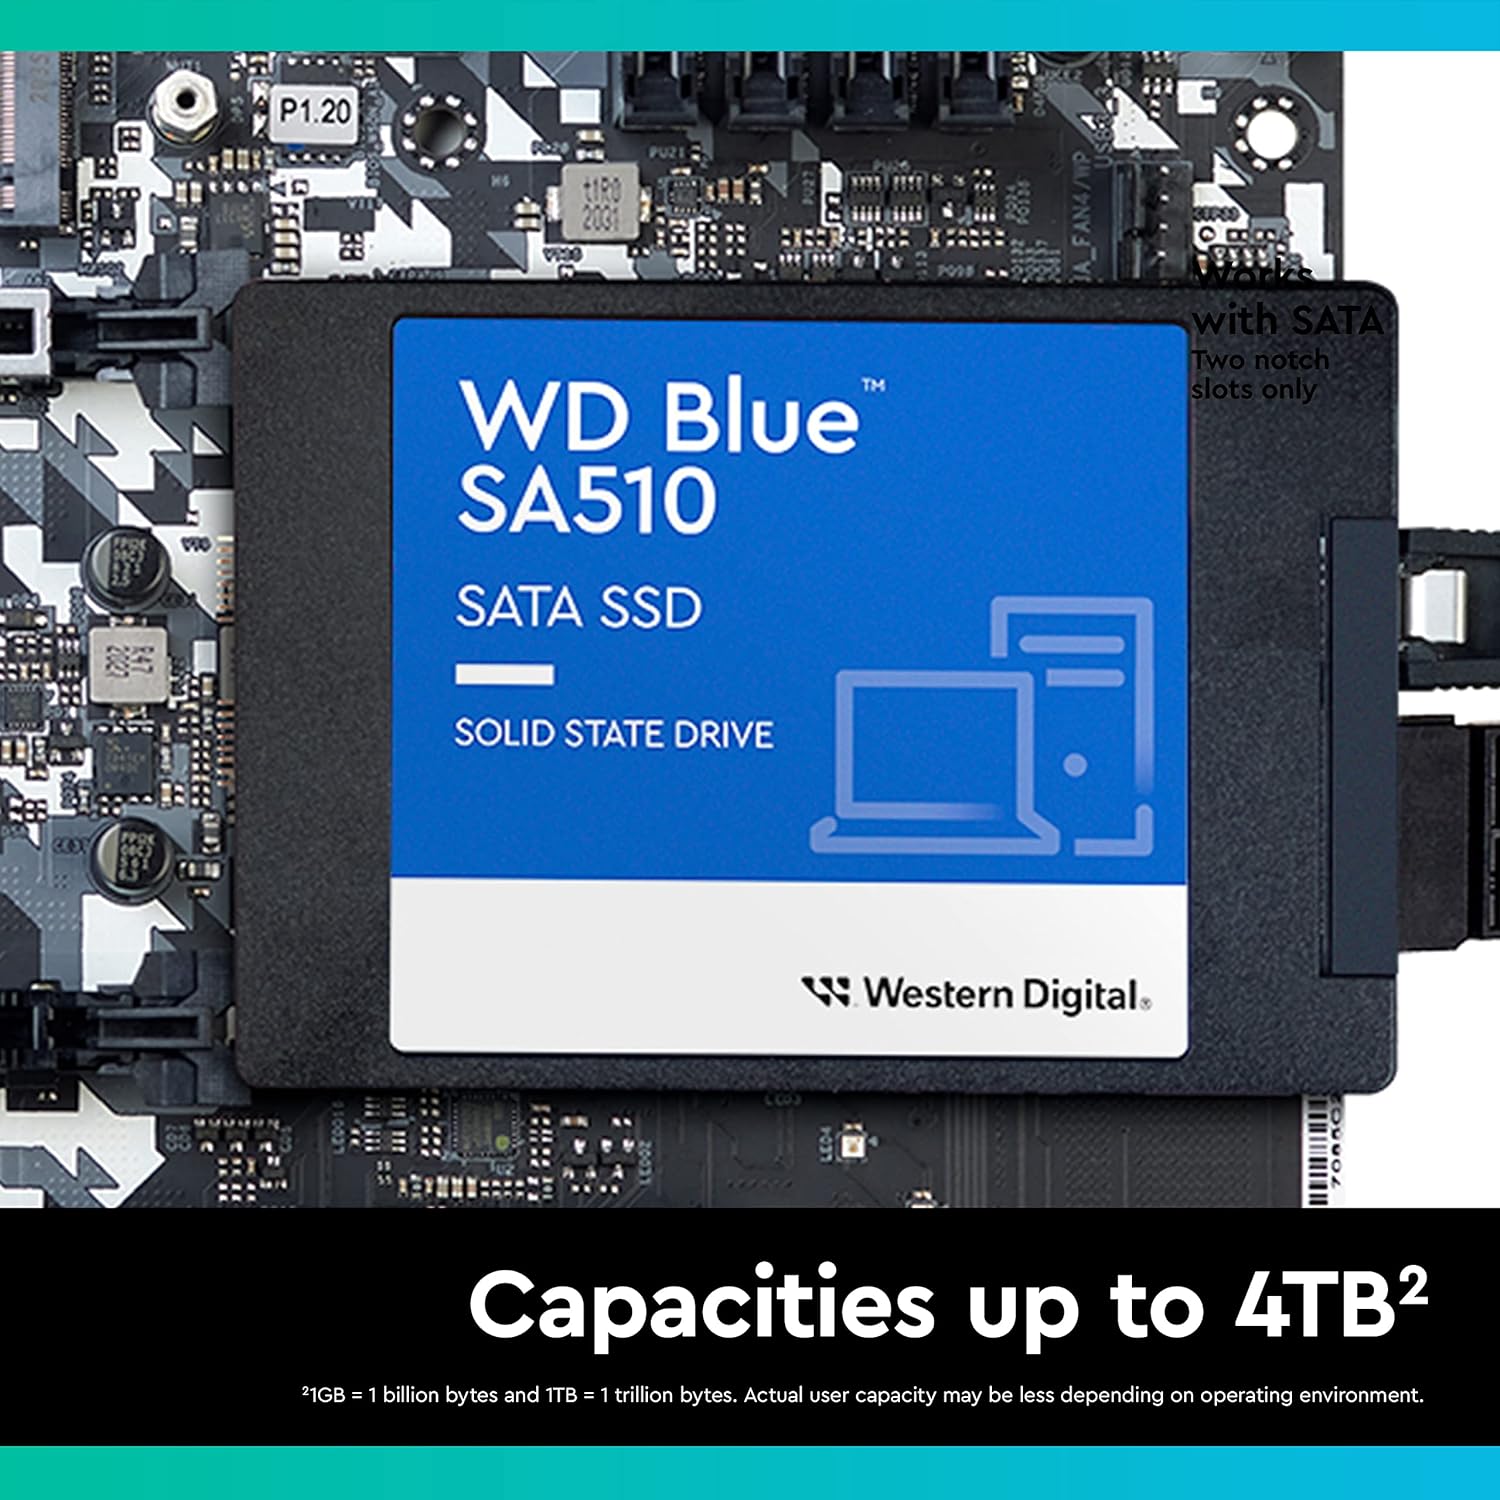 Western Digital 1TB WD Blue SA510 SATA Internal Solid State Drive SSD - SATA III 6 Gb/s, 2.5/7mm, Up to 560 MB/s - WDS100T3B0A